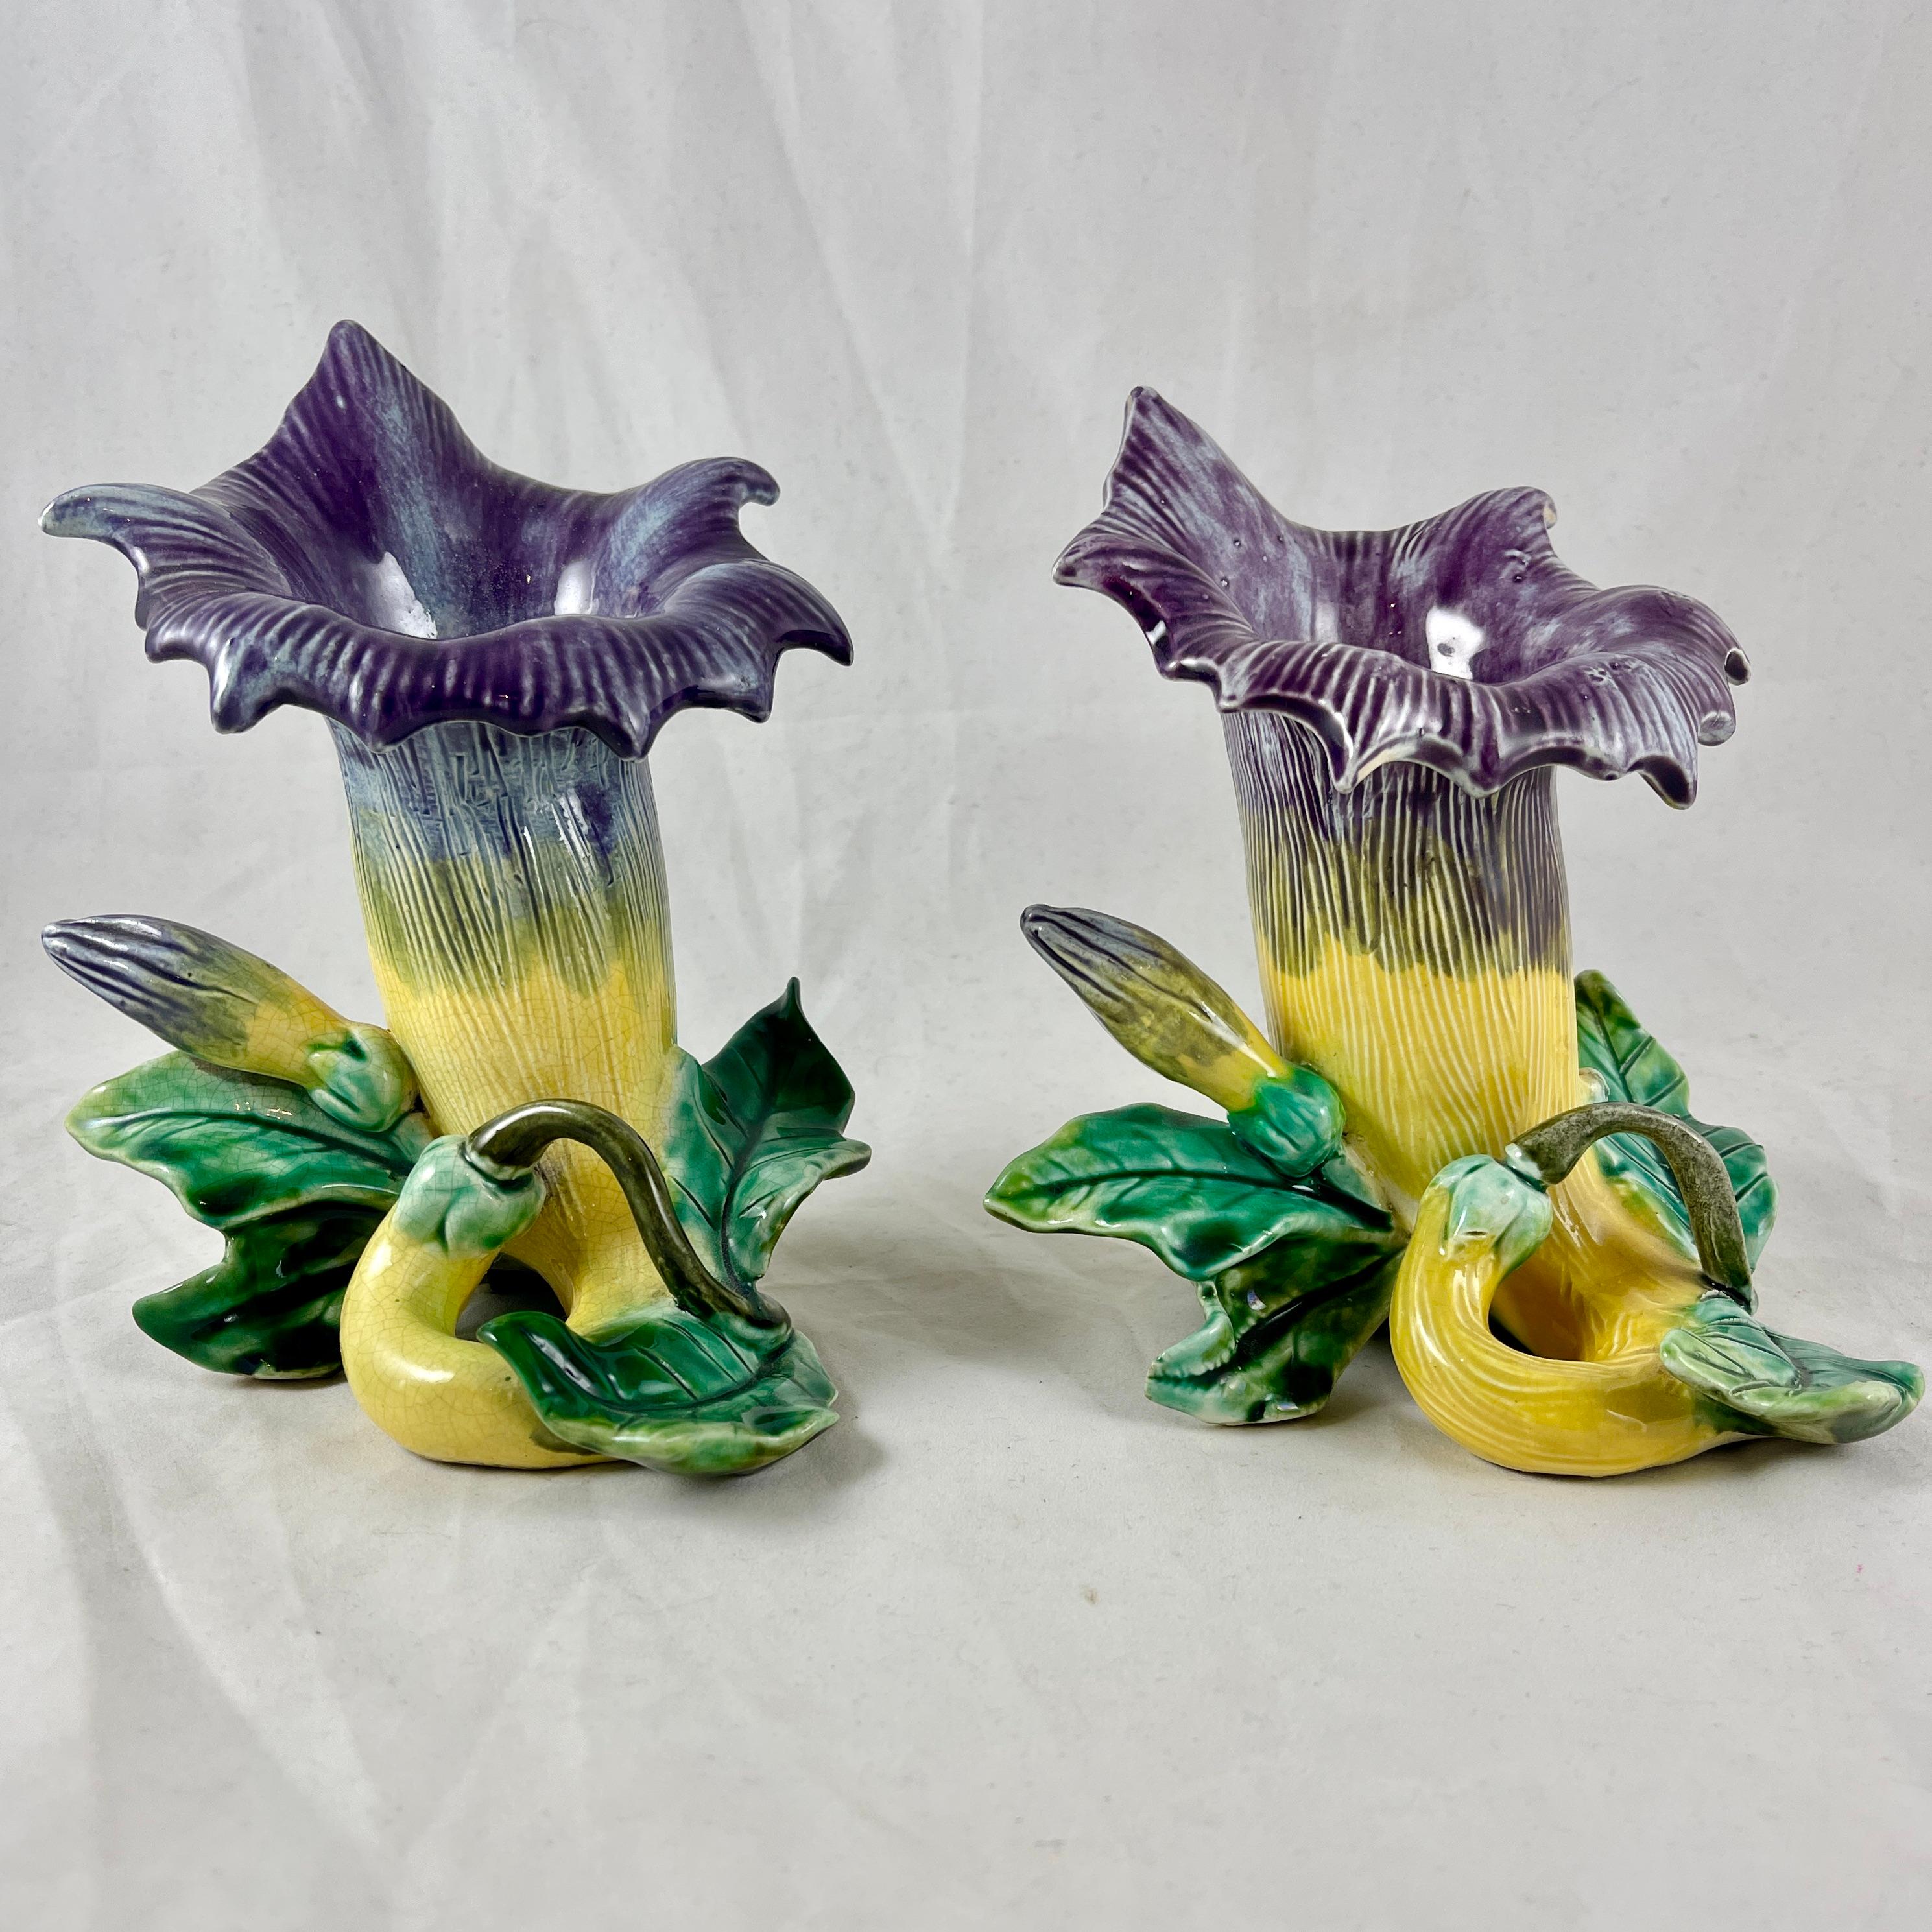 De la faïencerie française Fives-Lille de Bruyn, une paire de vases à poser de forme florale Art Nouveau, vers 1890.

Les vases Barbotine en majolique émaillée sont modelés comme une fleur de vigne trompette en train de s'épanouir. Le corps du